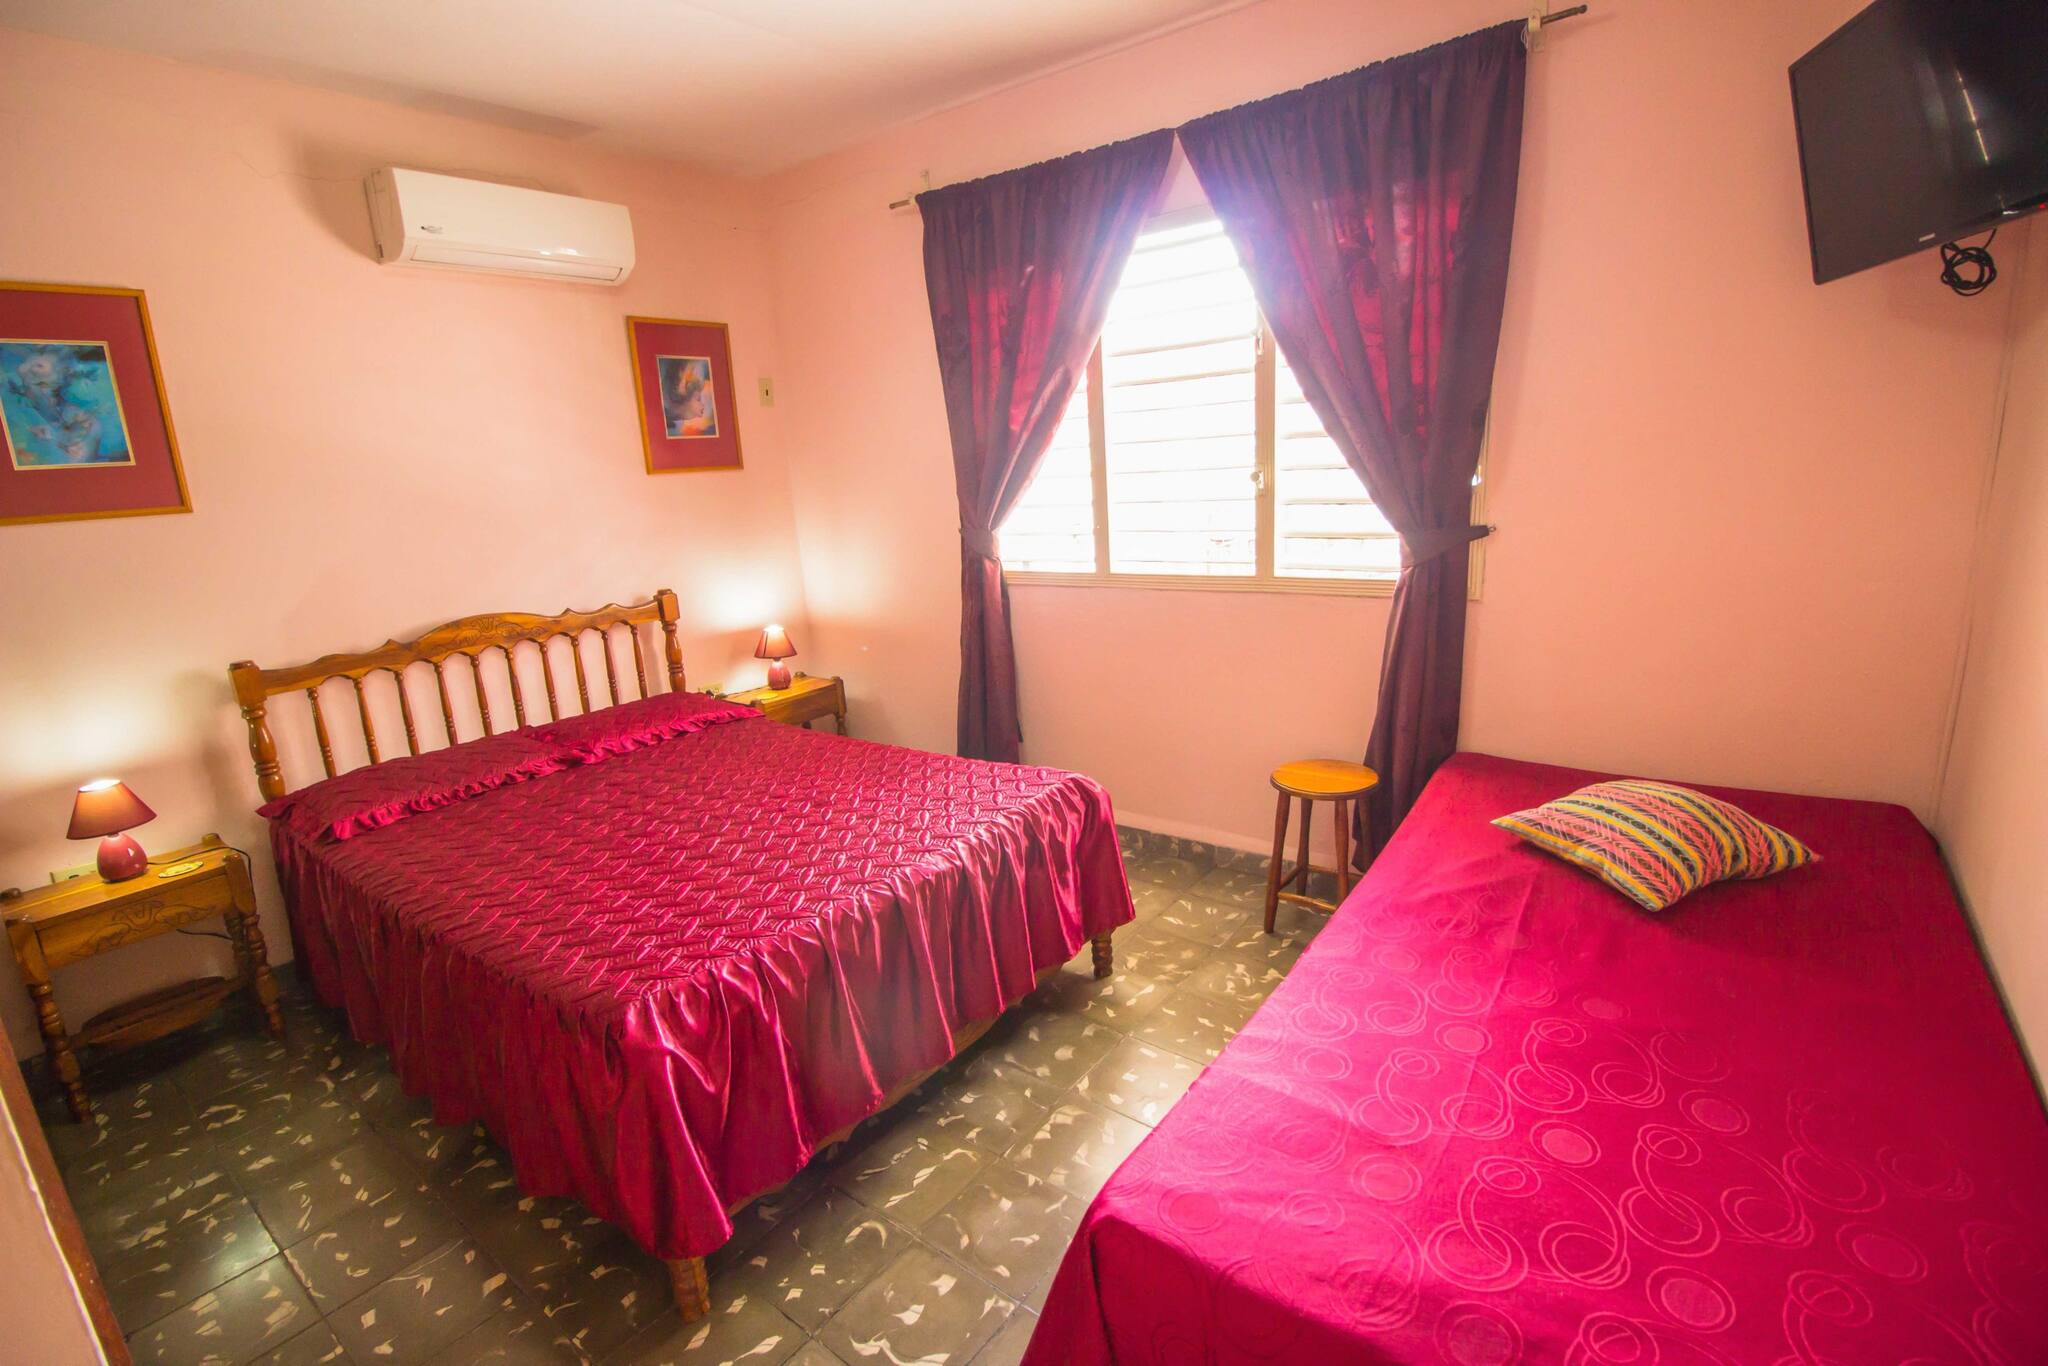 Armando's Hostel House, Room 5, Very Close To El Malecon - Cuba